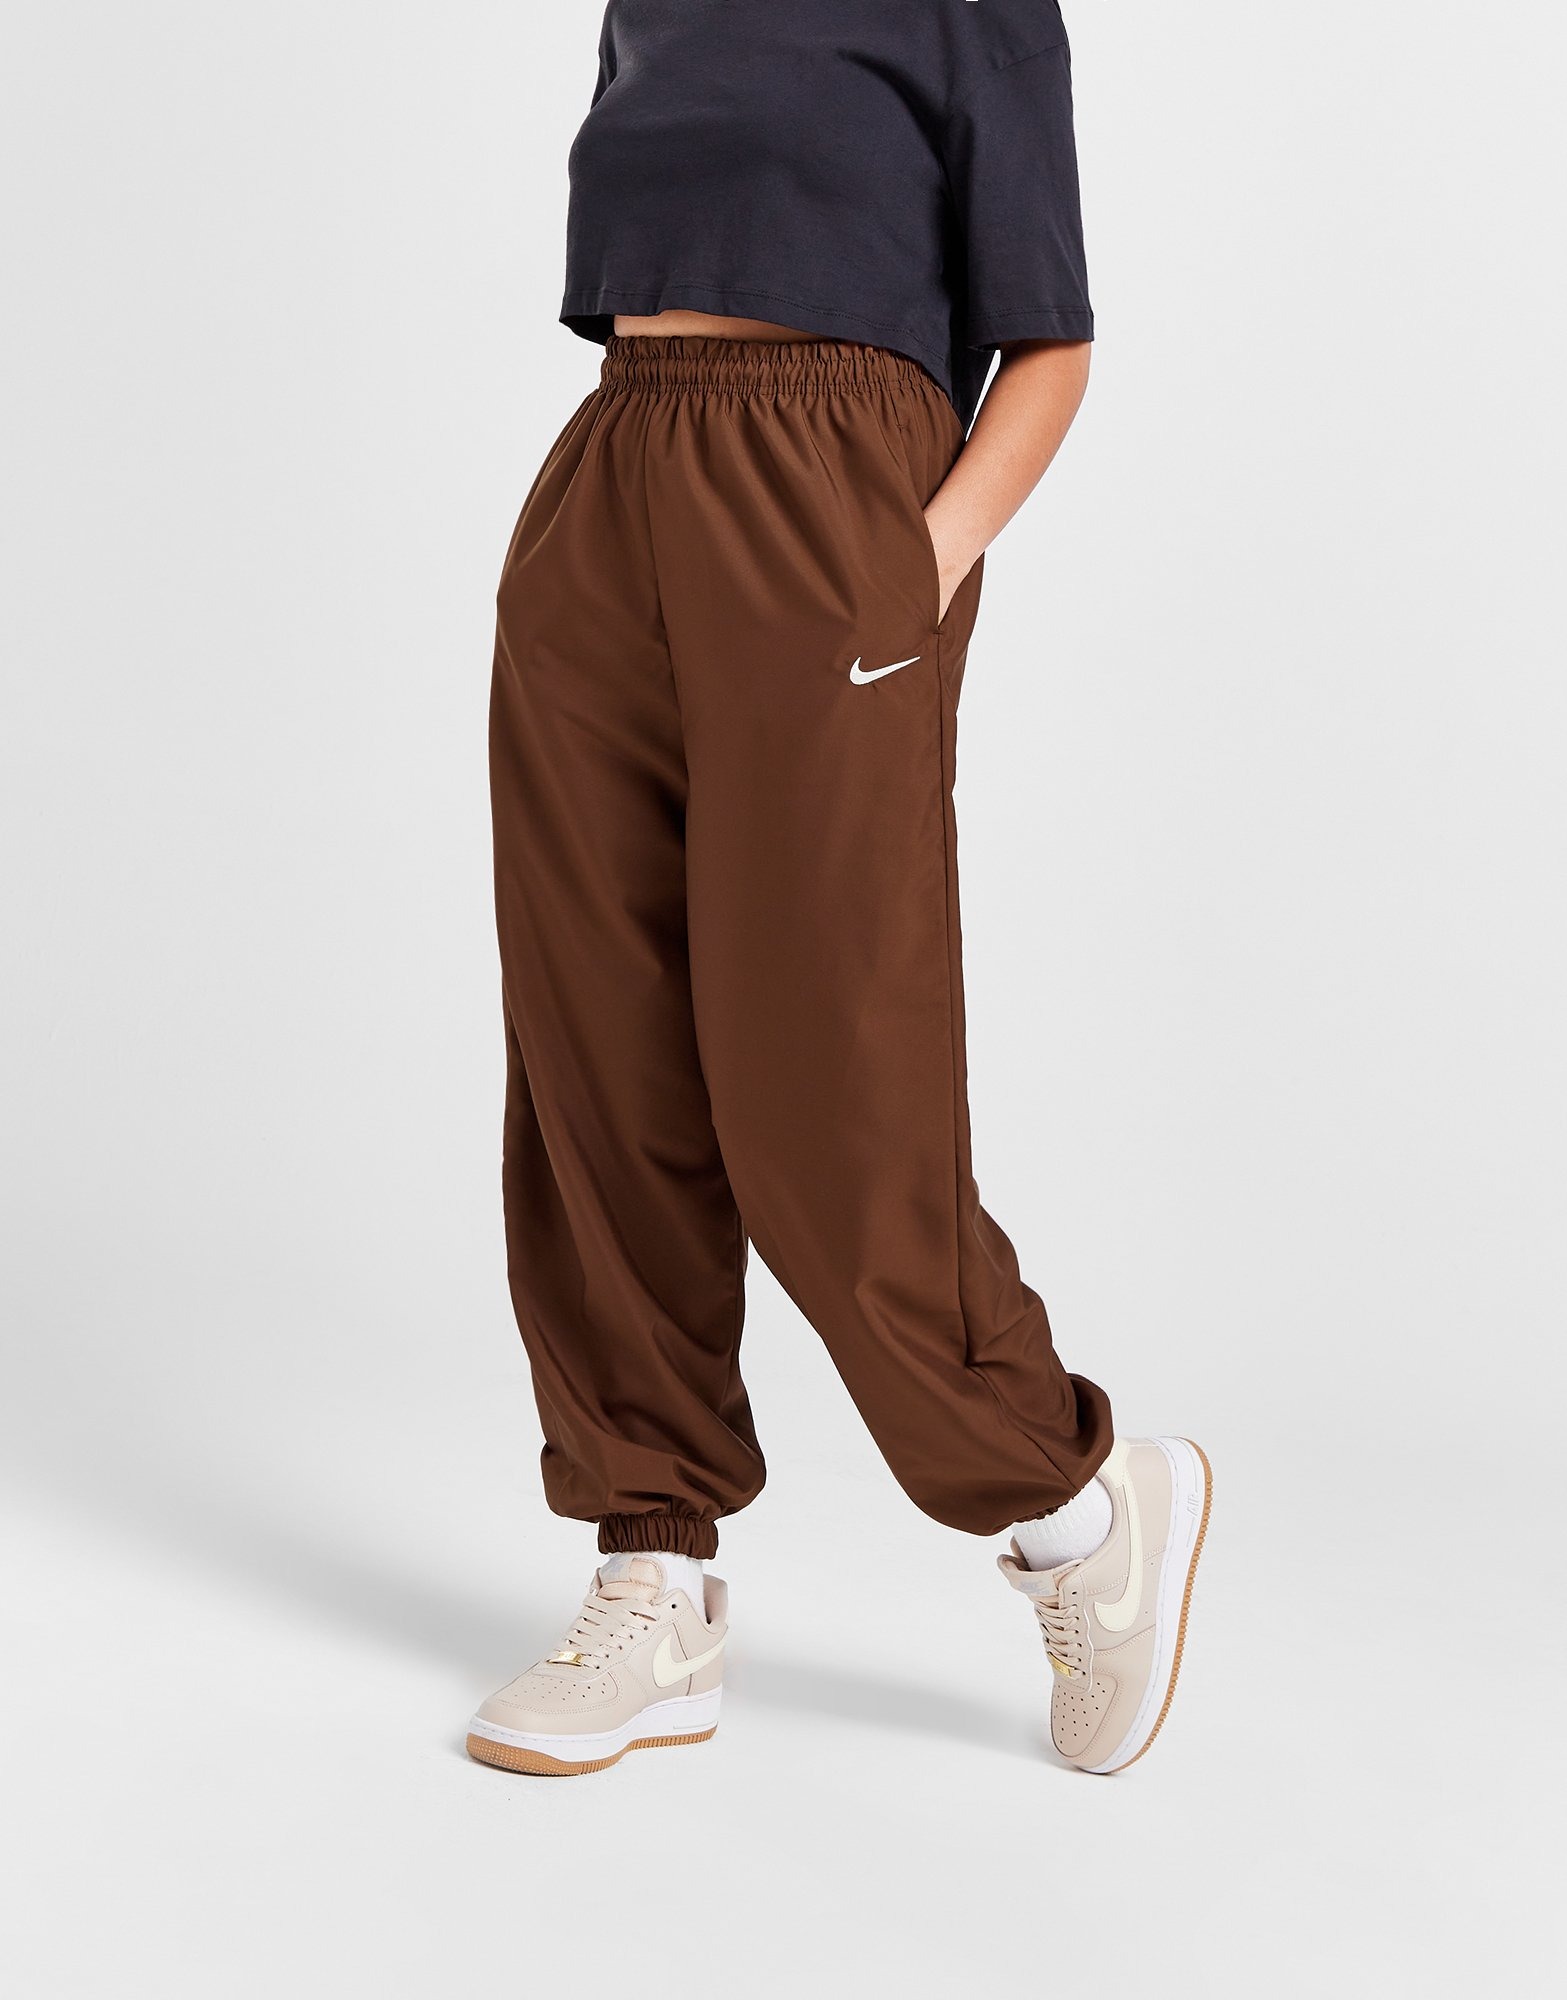 Pantalons de Survêtement, Nike Boutique Sortie Pour Femme & Homme